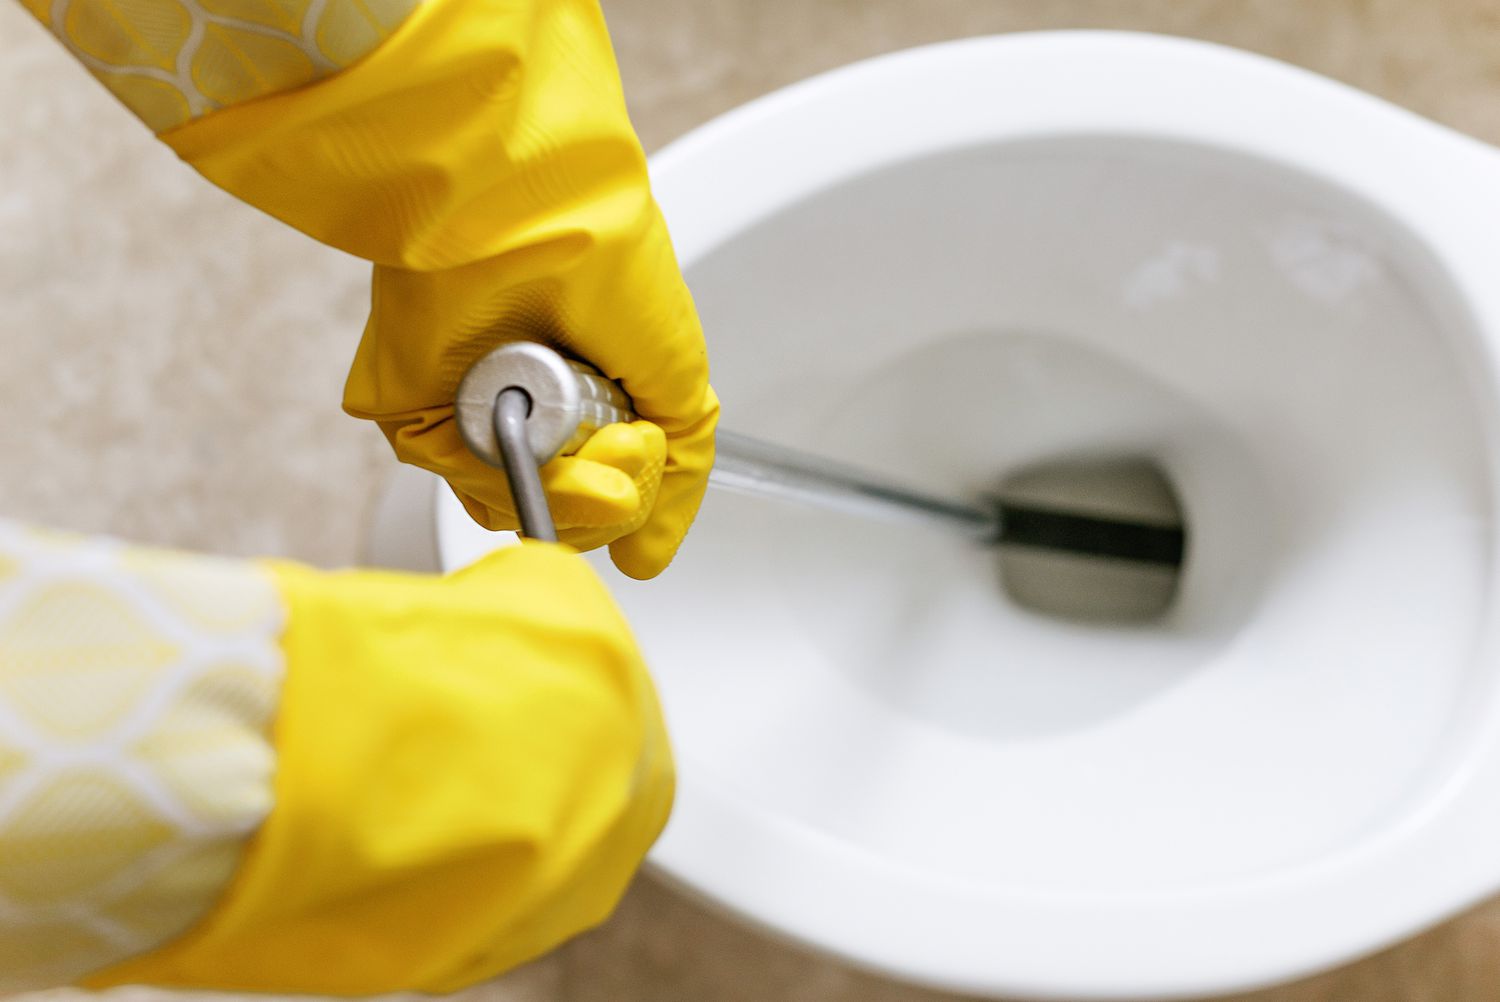 Kurbel der Toilettenschnecke zum Lösen der Verstopfung der Toilette